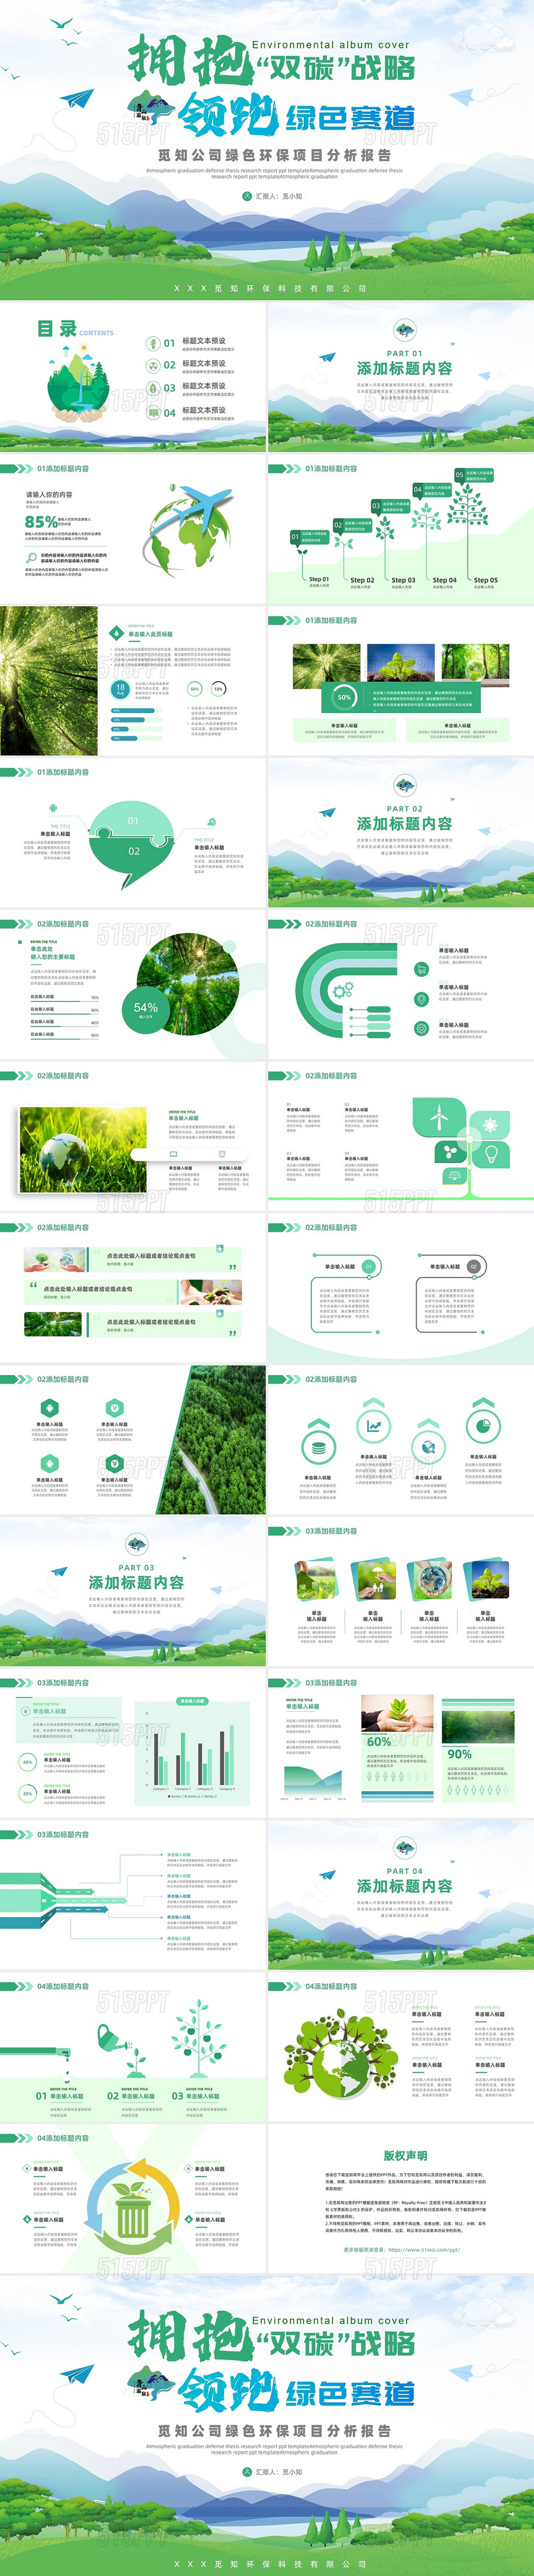 绿色环保 节能减排企业介绍环保产品PPT模板